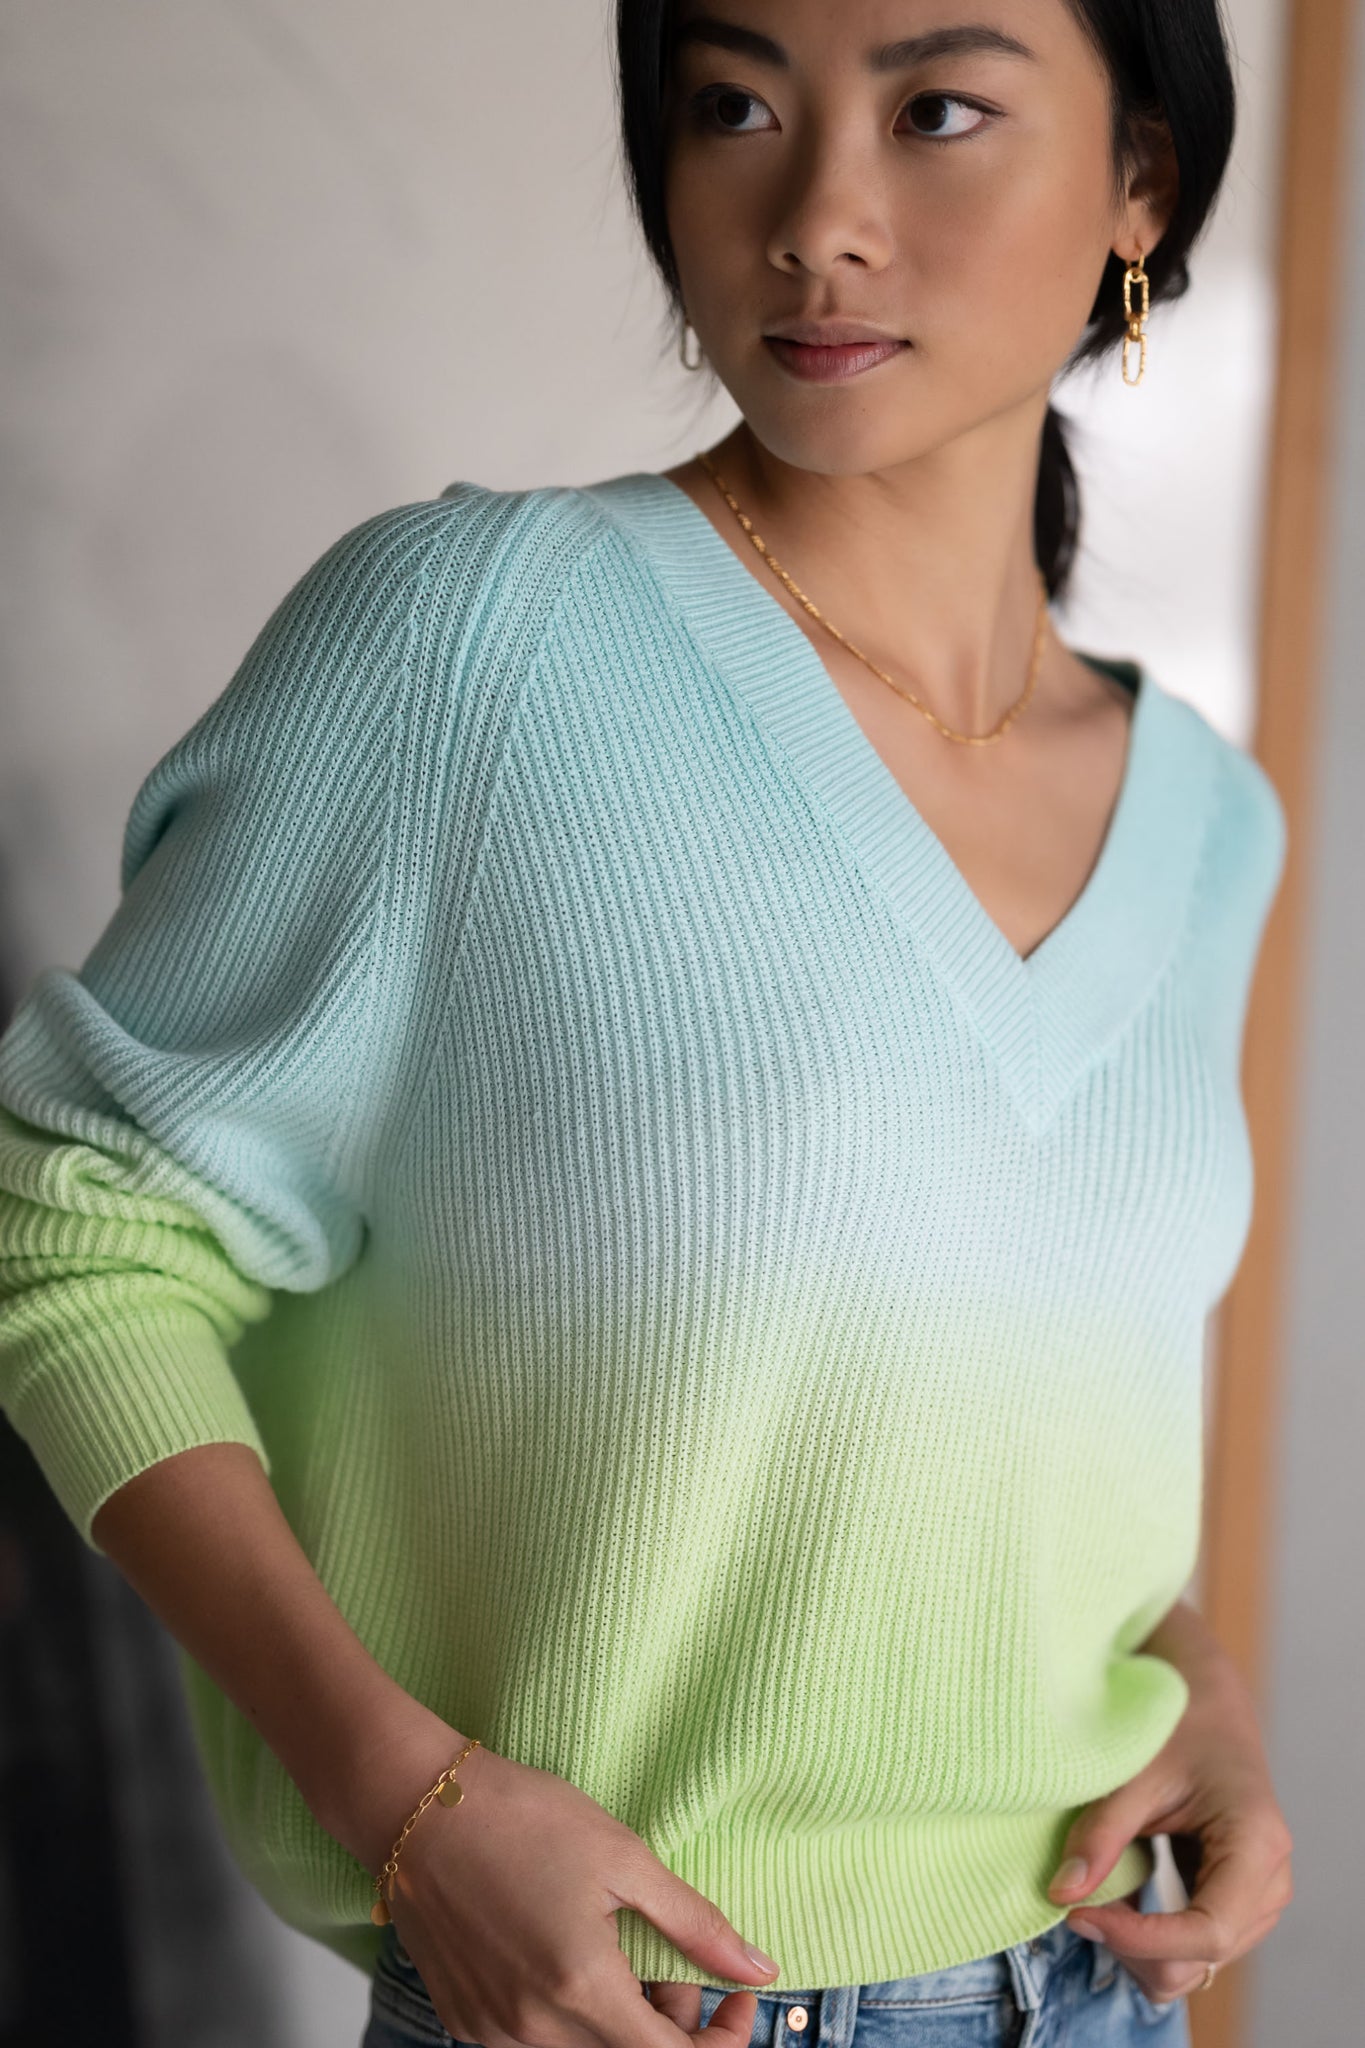 Maya Long Sleeve V-Neck Knit - Blue/Green Ombré